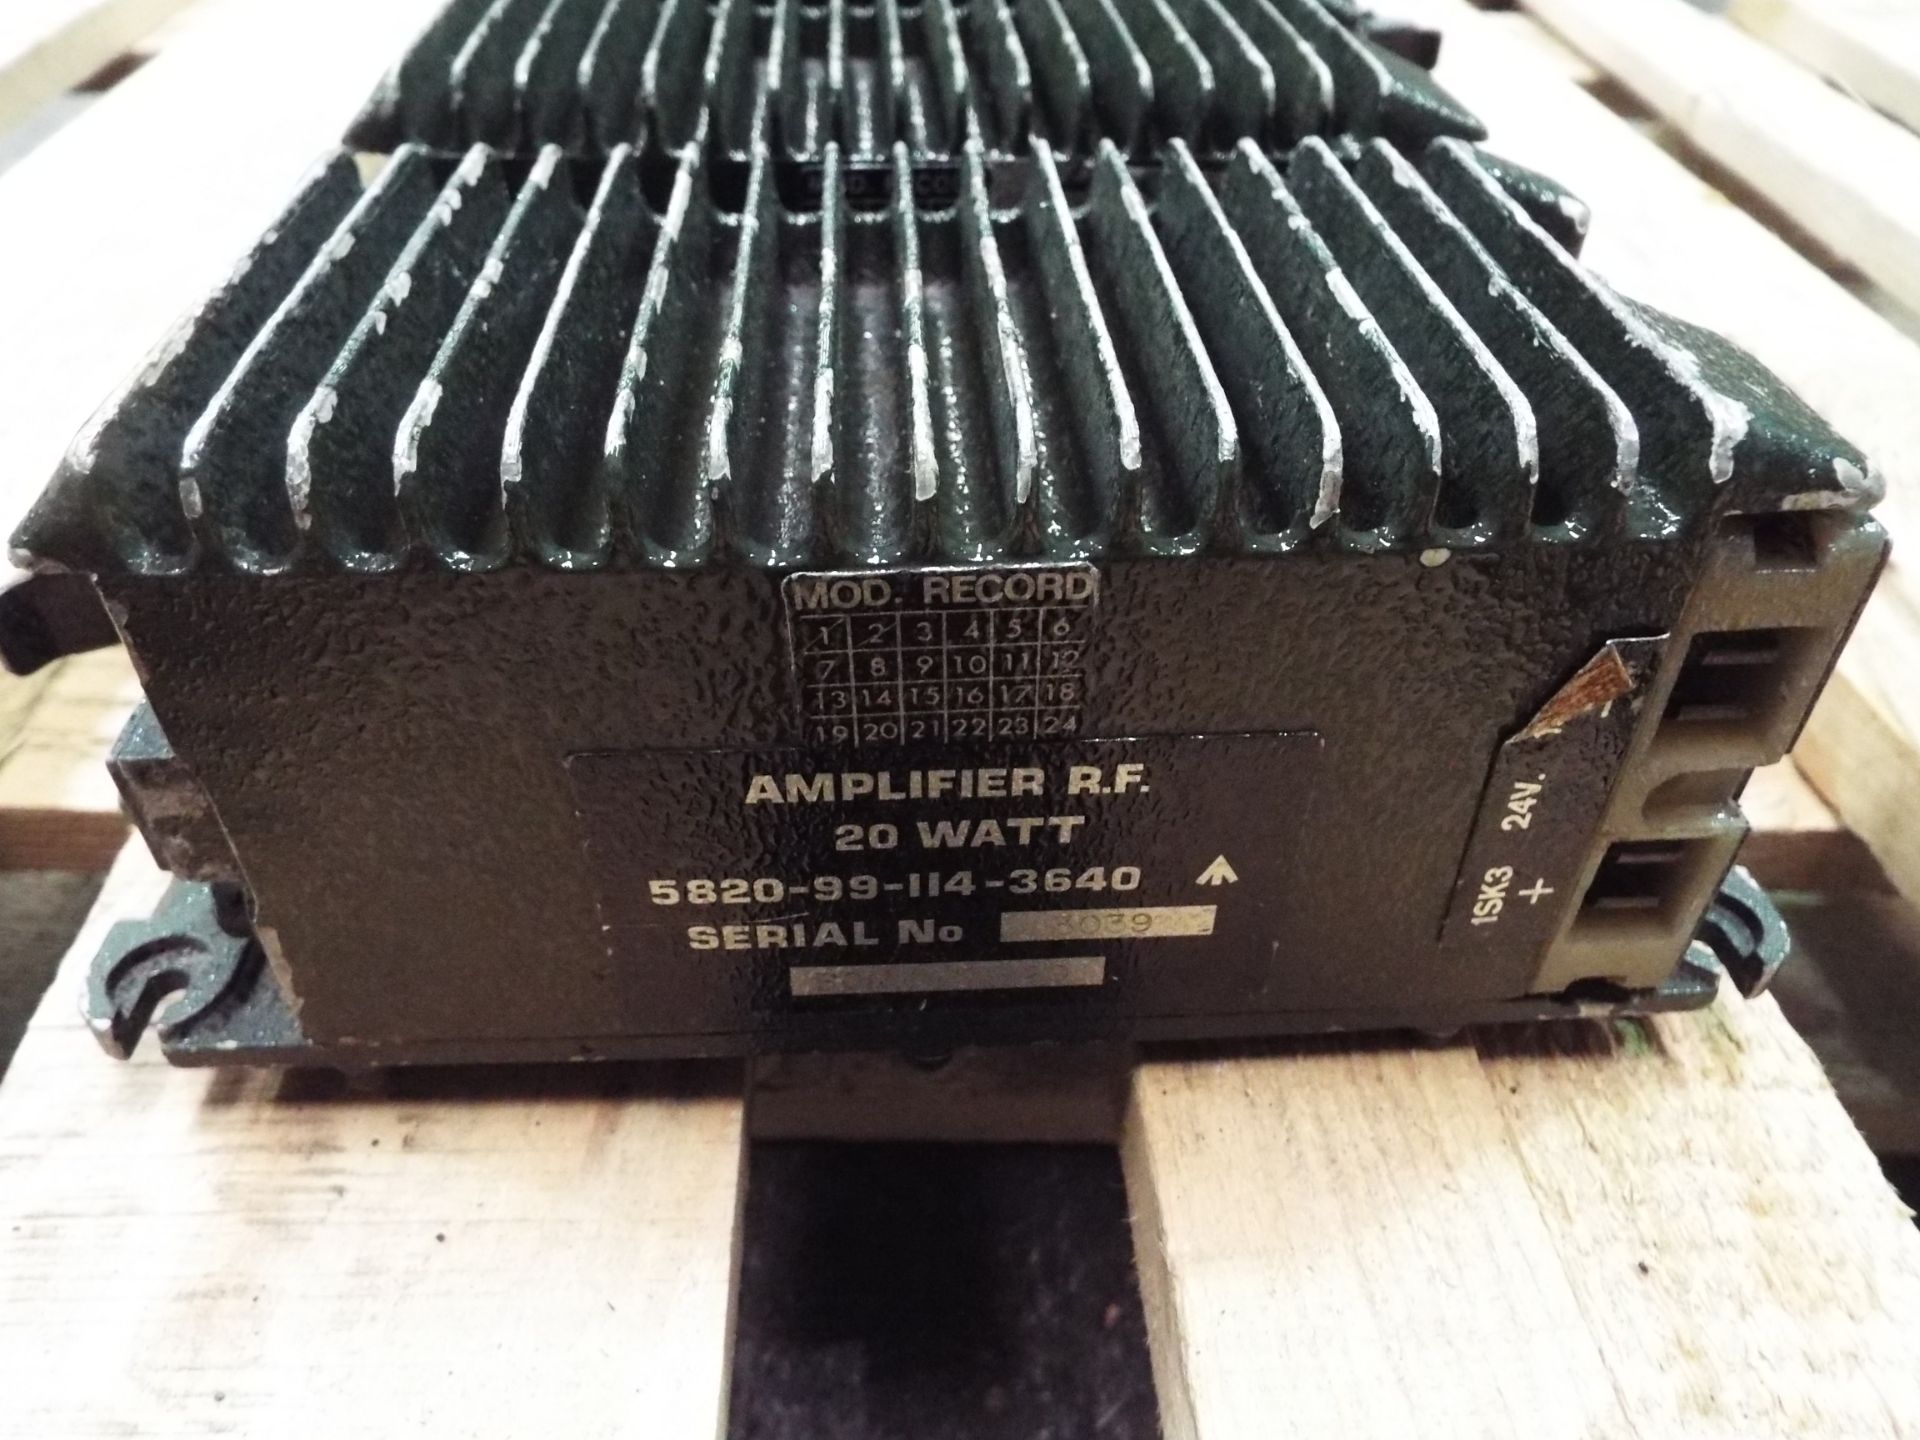 3 x Clansman R.F 20 Watt Amplifiers - Image 2 of 5